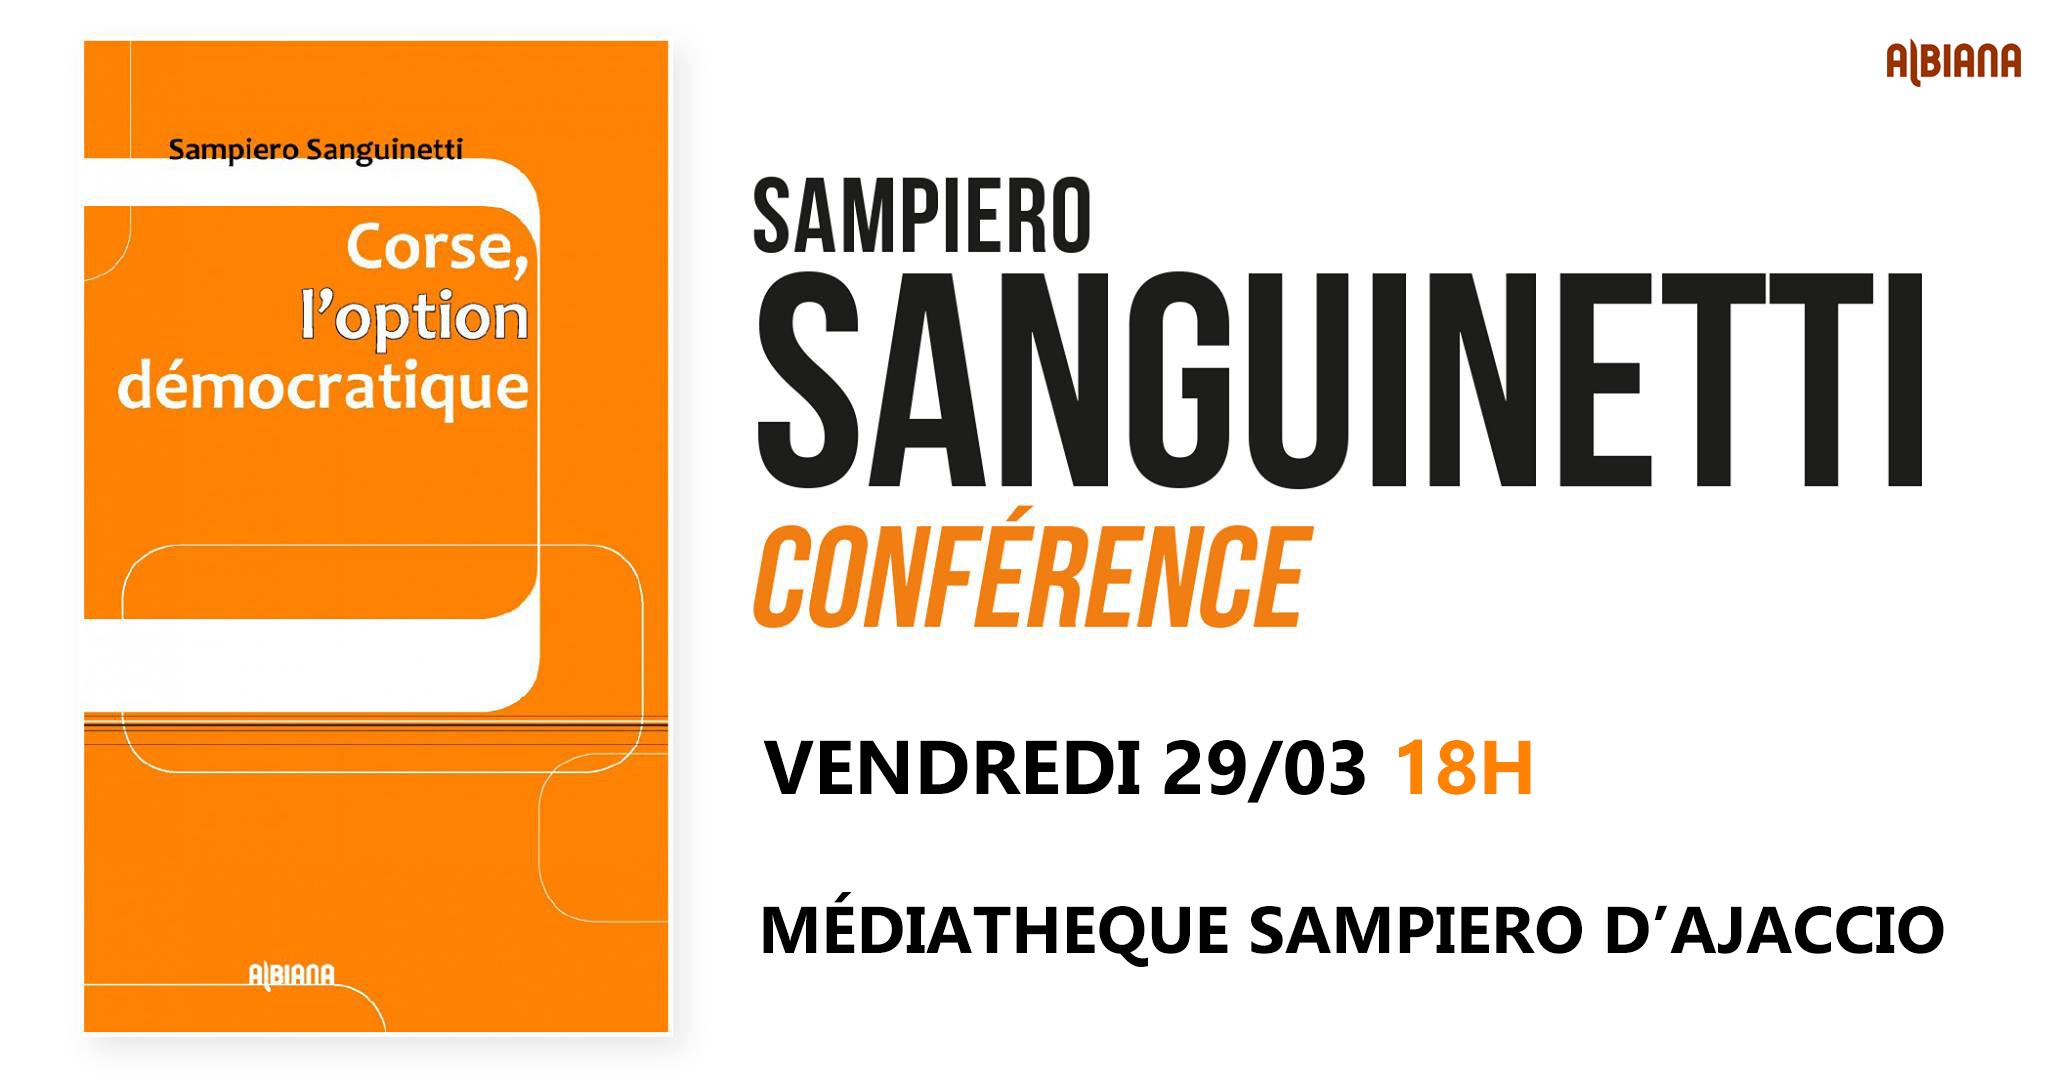 Conférence de Sampiero Sanguinetti à Ajaccio